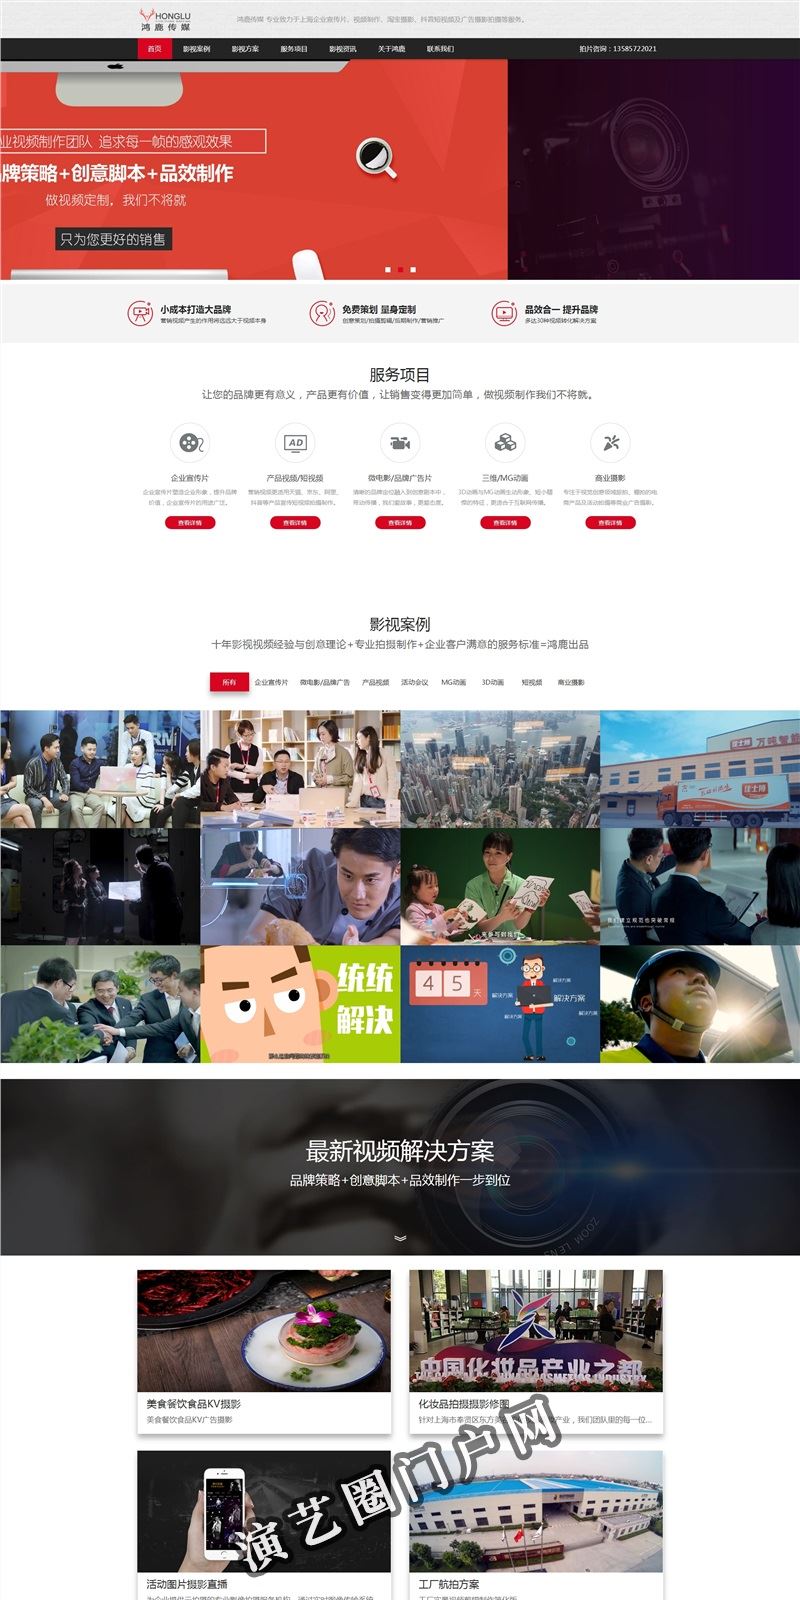 企业宣传片制作公司-视频拍摄-产品拍摄-上海鸿鹿截图